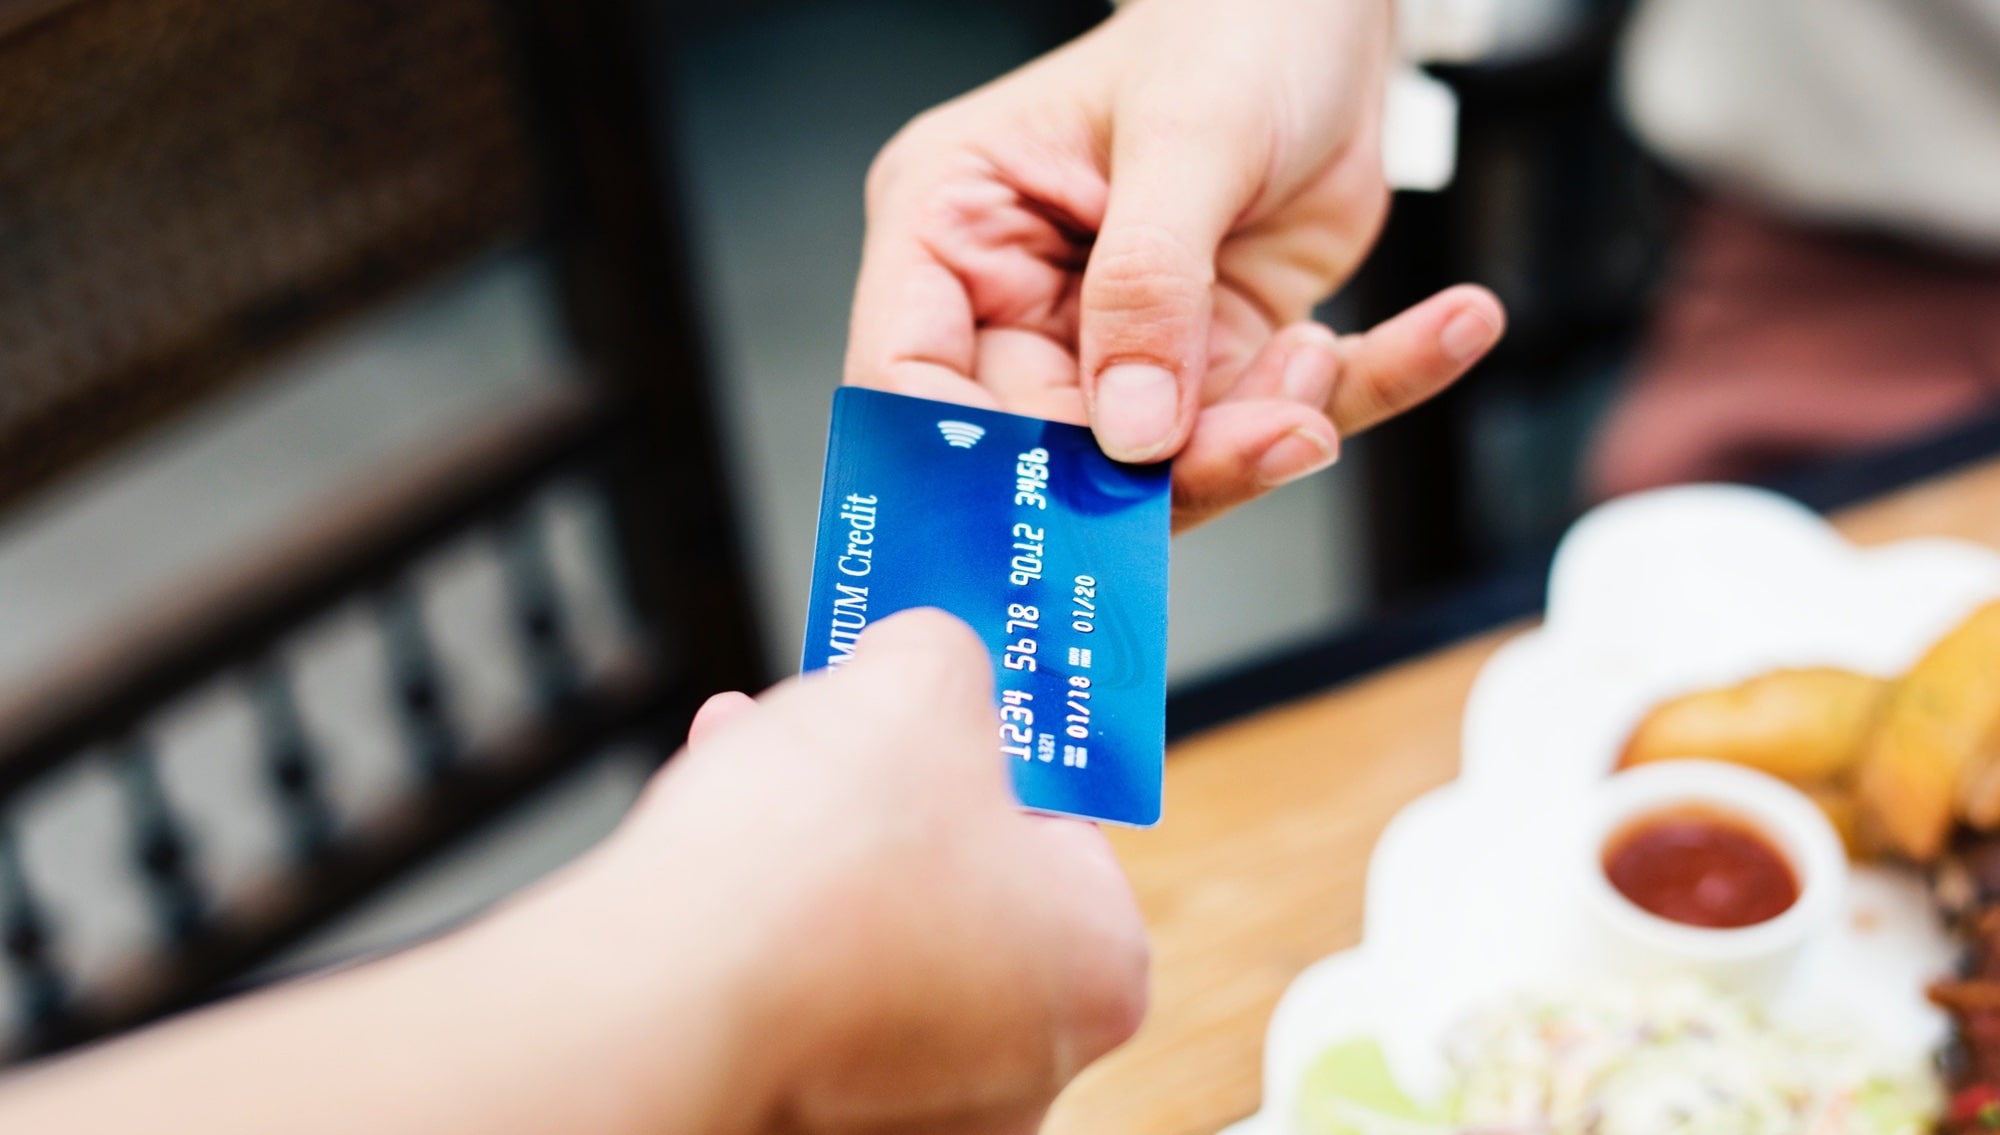 Son olarak, kredi kartı numaranı ezbere biliyor musun?